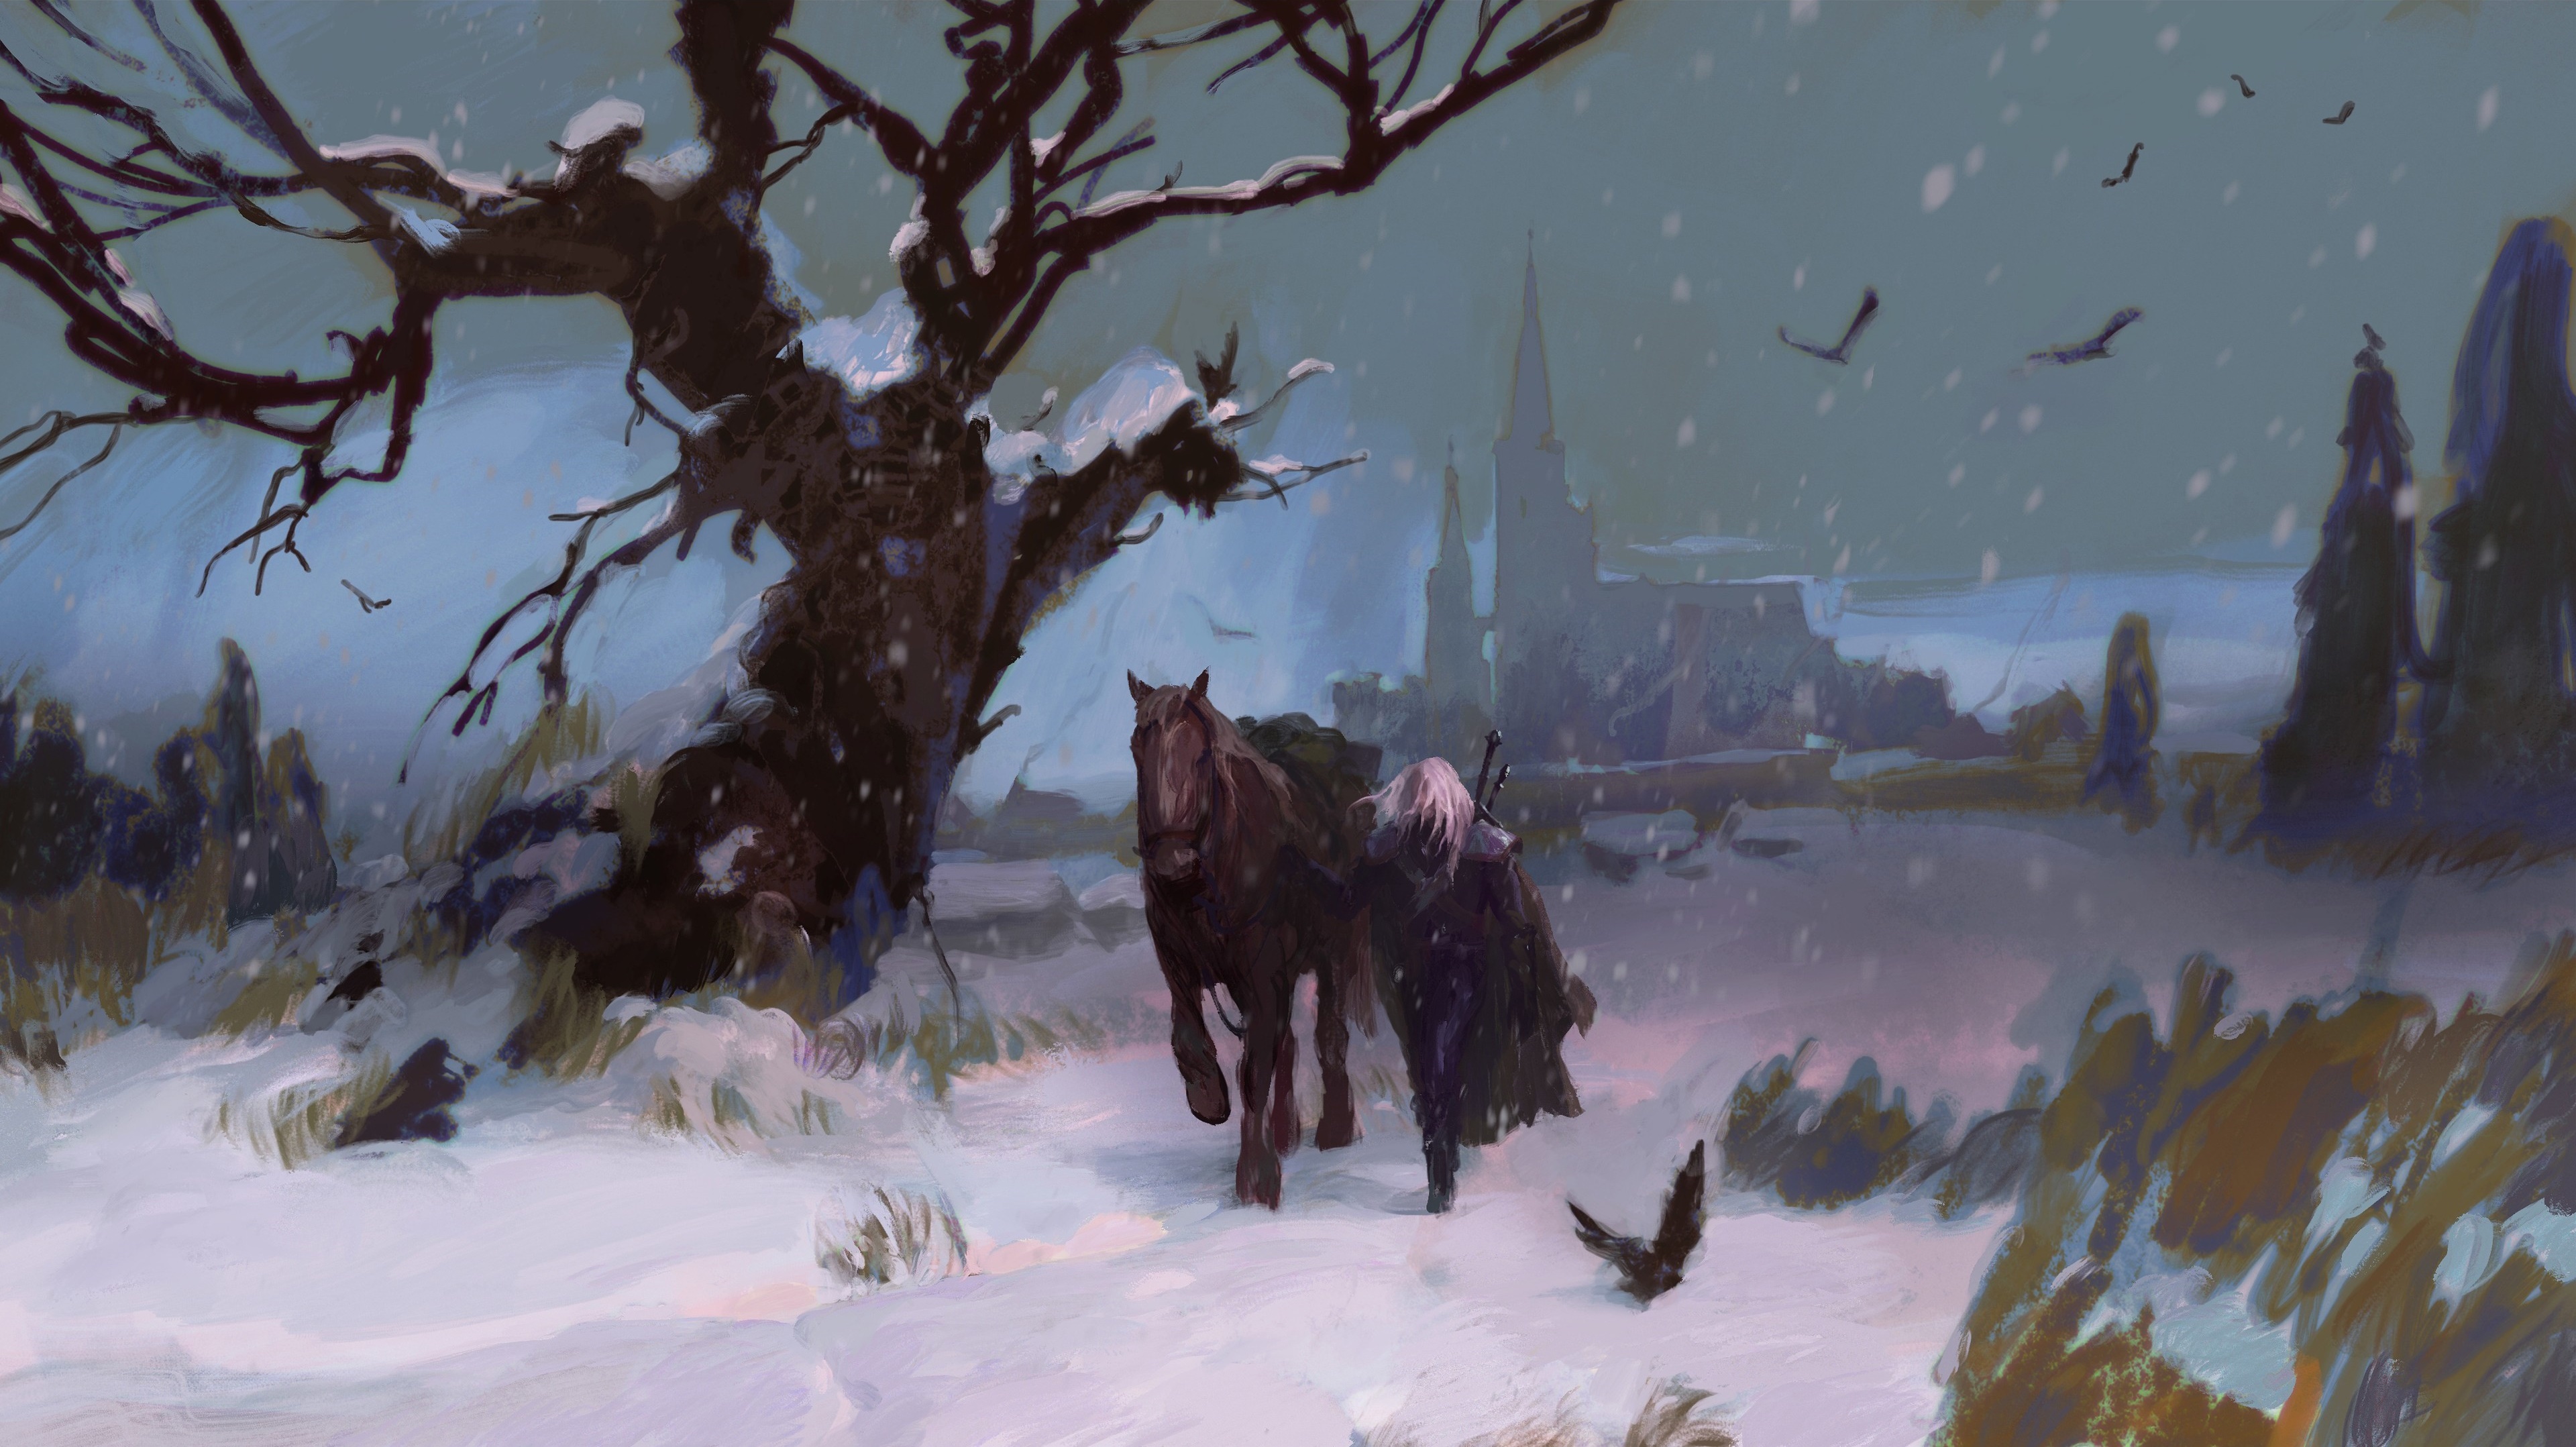 Fantasy Art Artwork Digital Art Video Game Art The Witcher Geralt Of Rivia 3840x2157